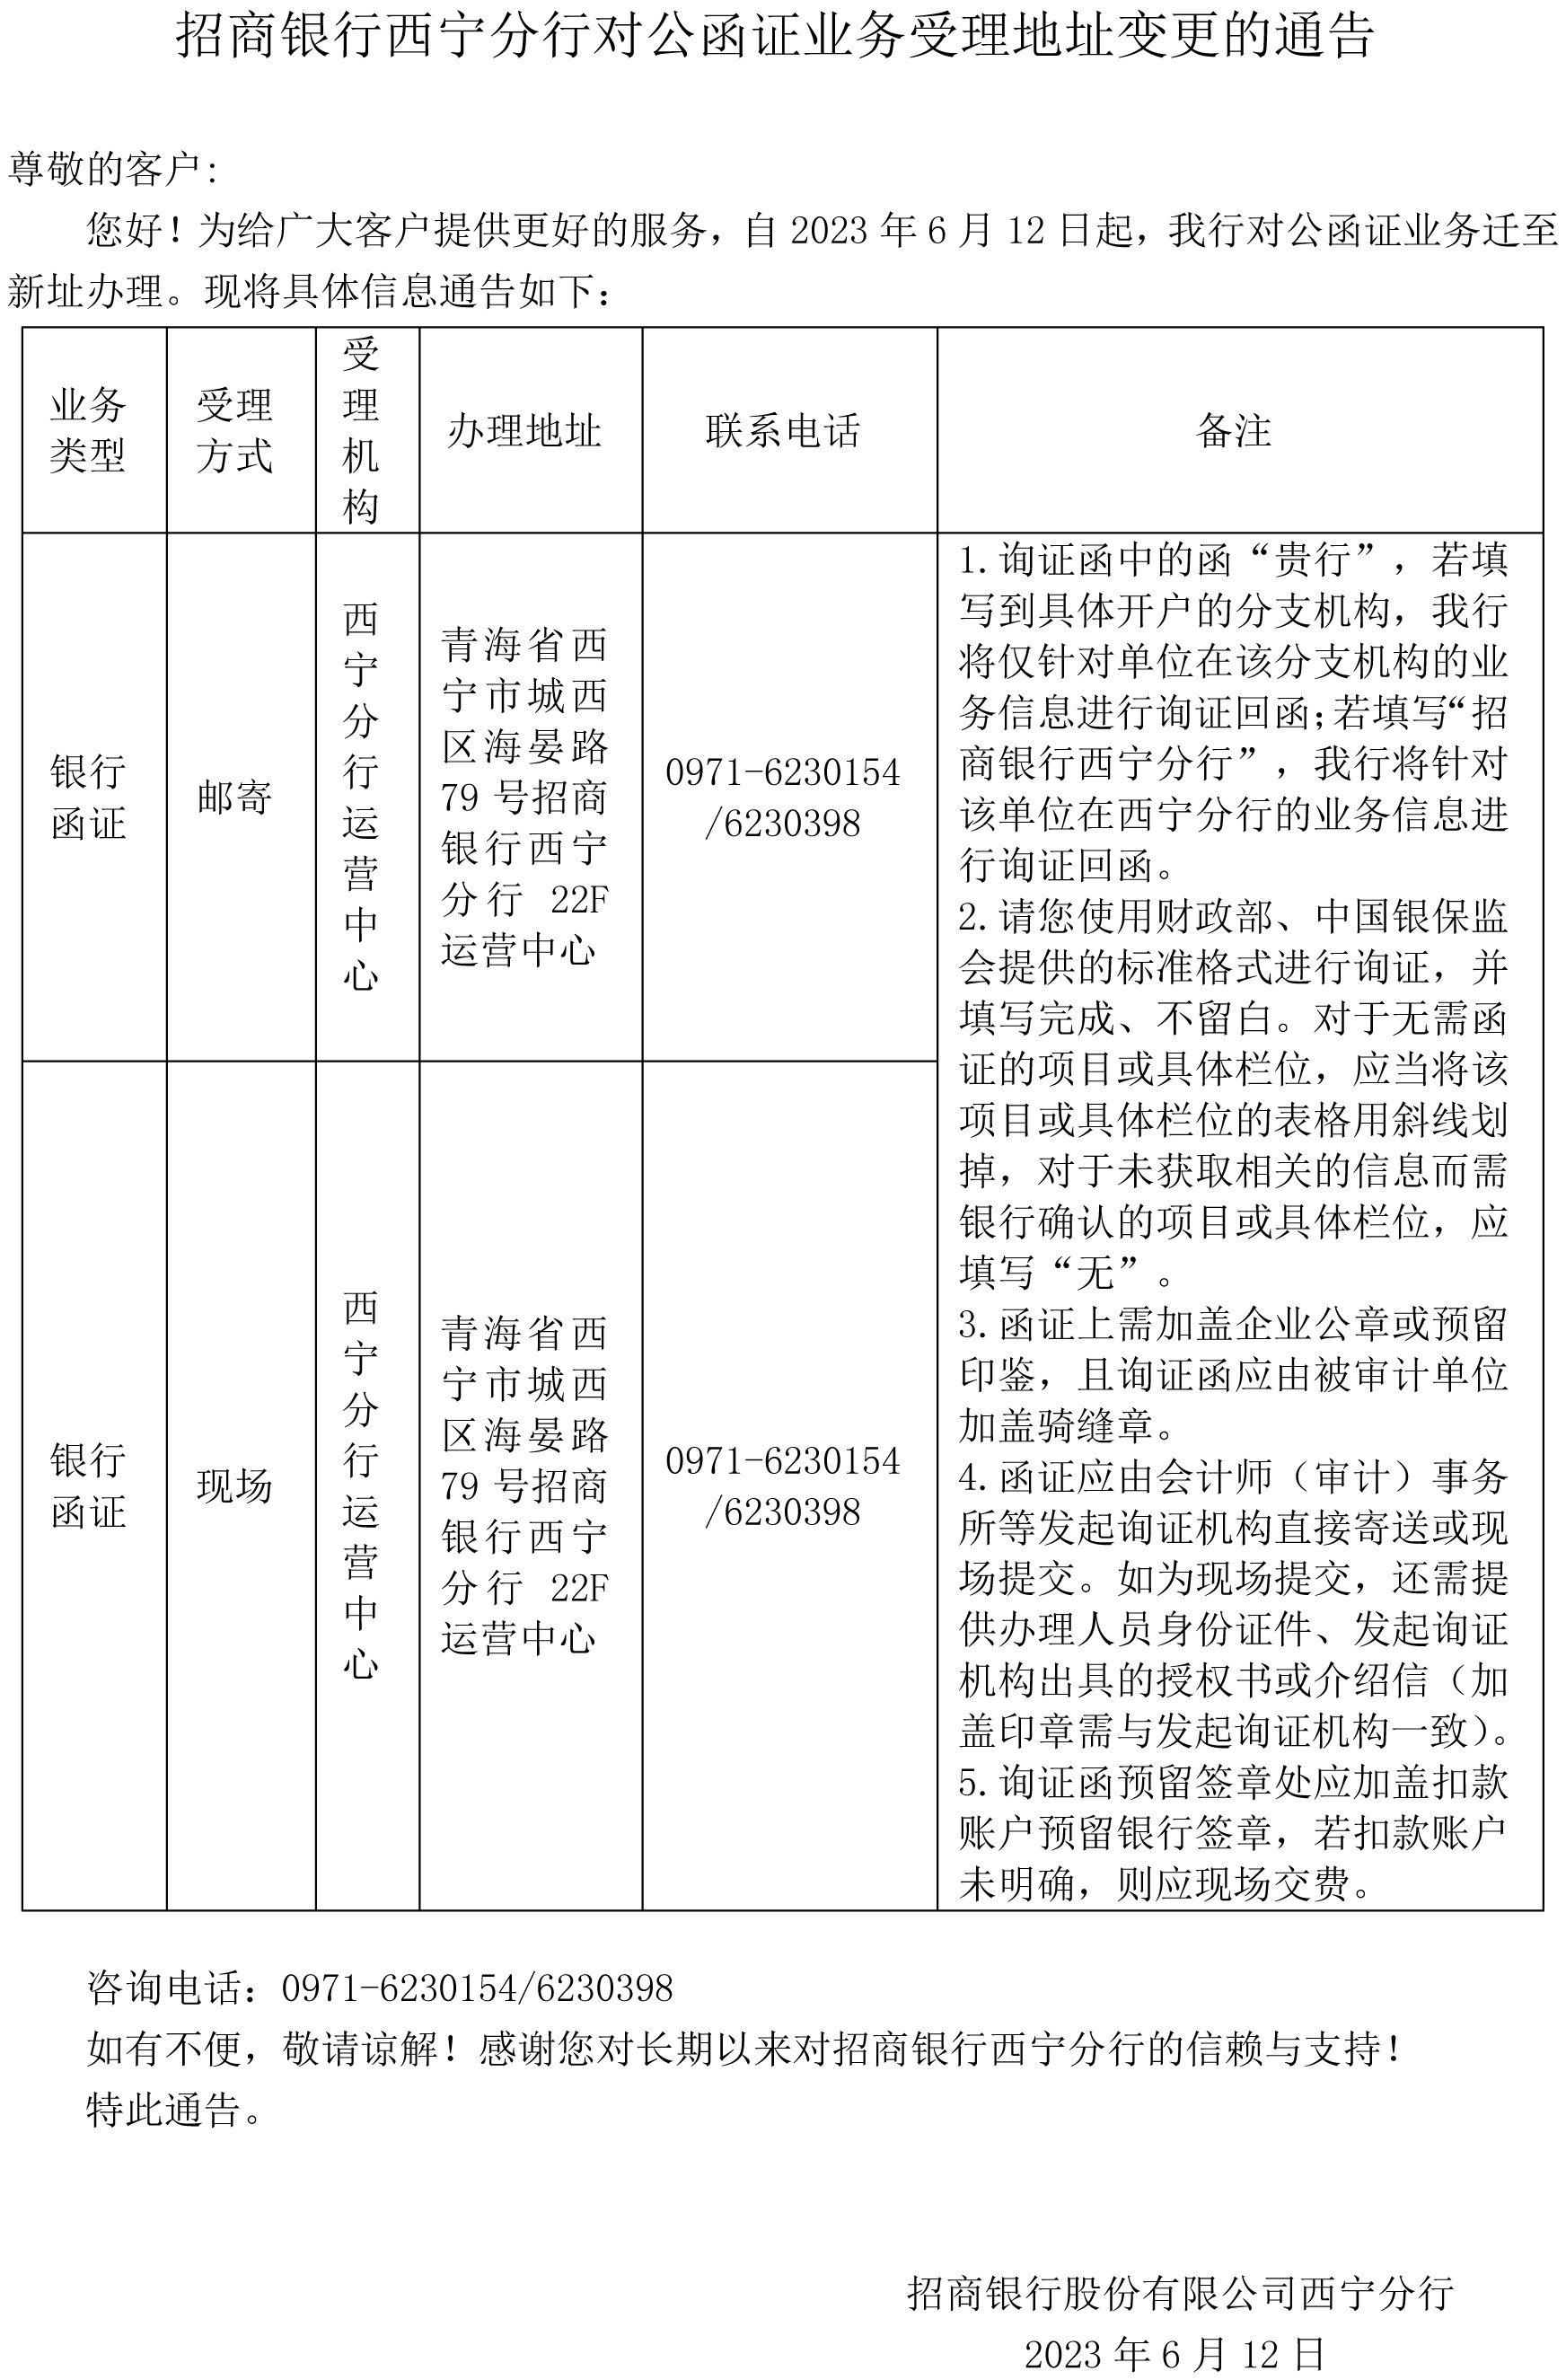 招商银行西宁分行对公函证业务受理地址变更的通告.jpg